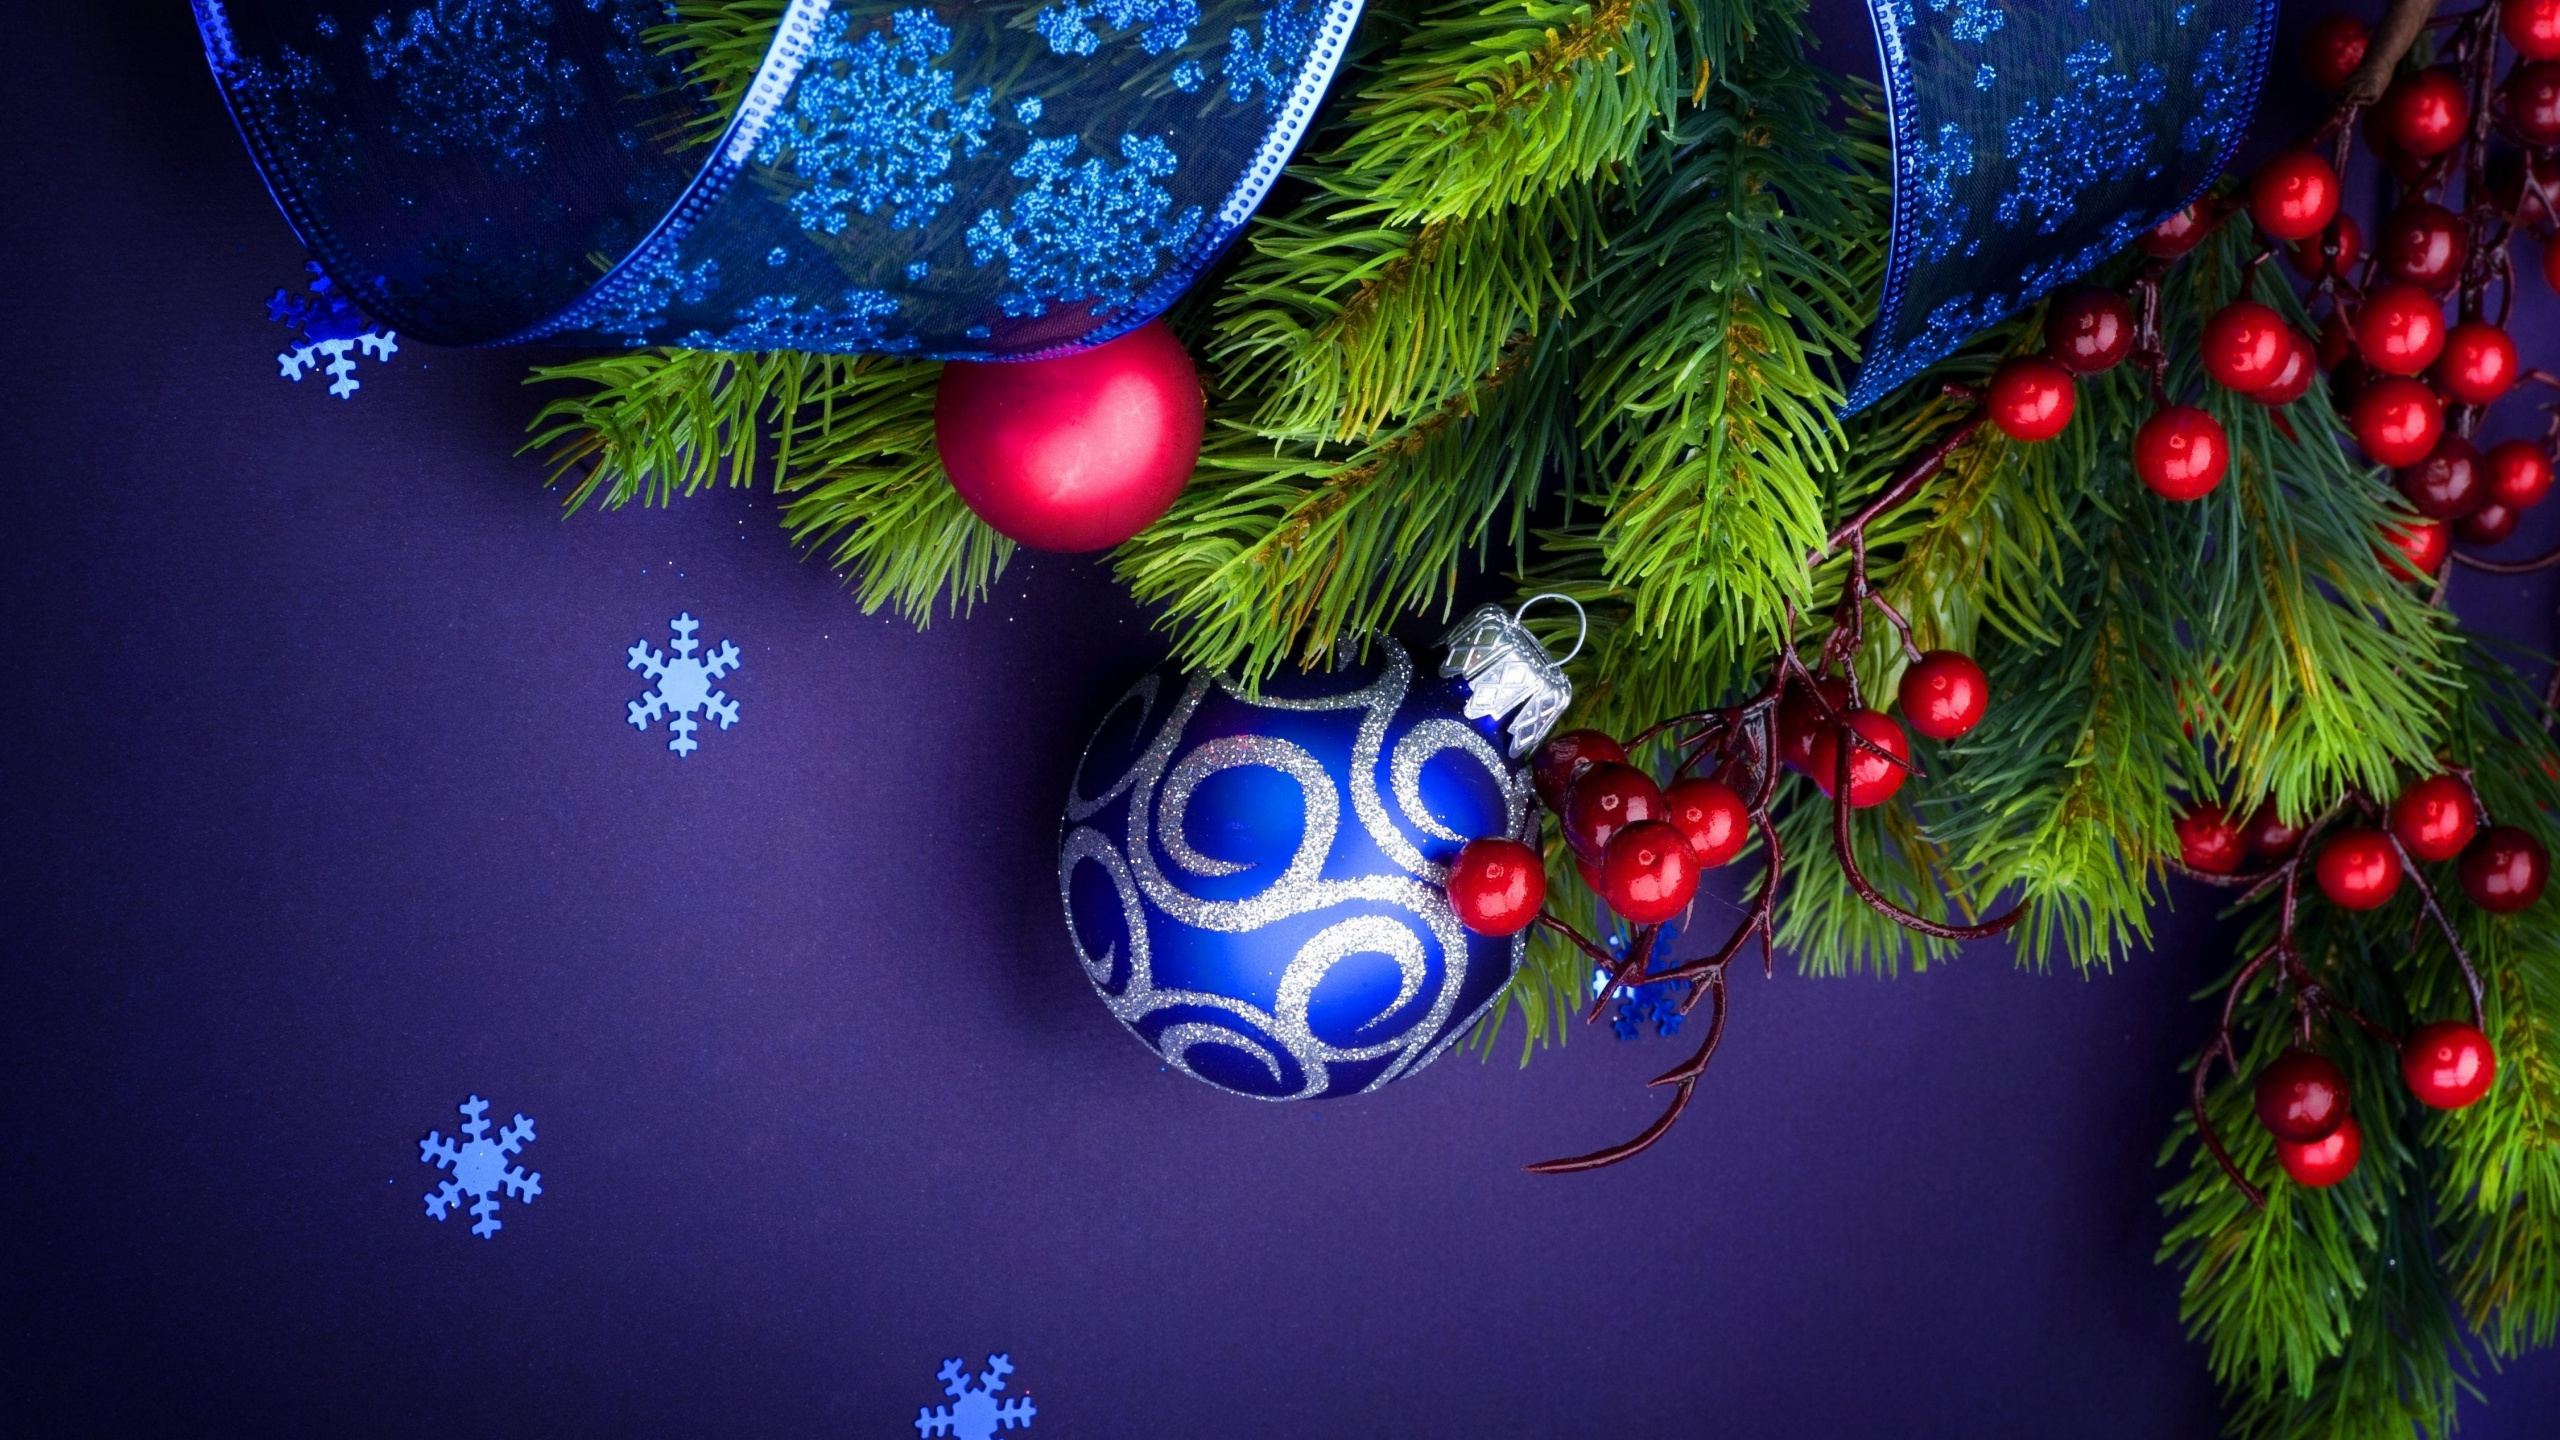 圣诞装饰, 圣诞树, Fir, 新的一年的树, 松的家庭 壁纸 2560x1440 允许